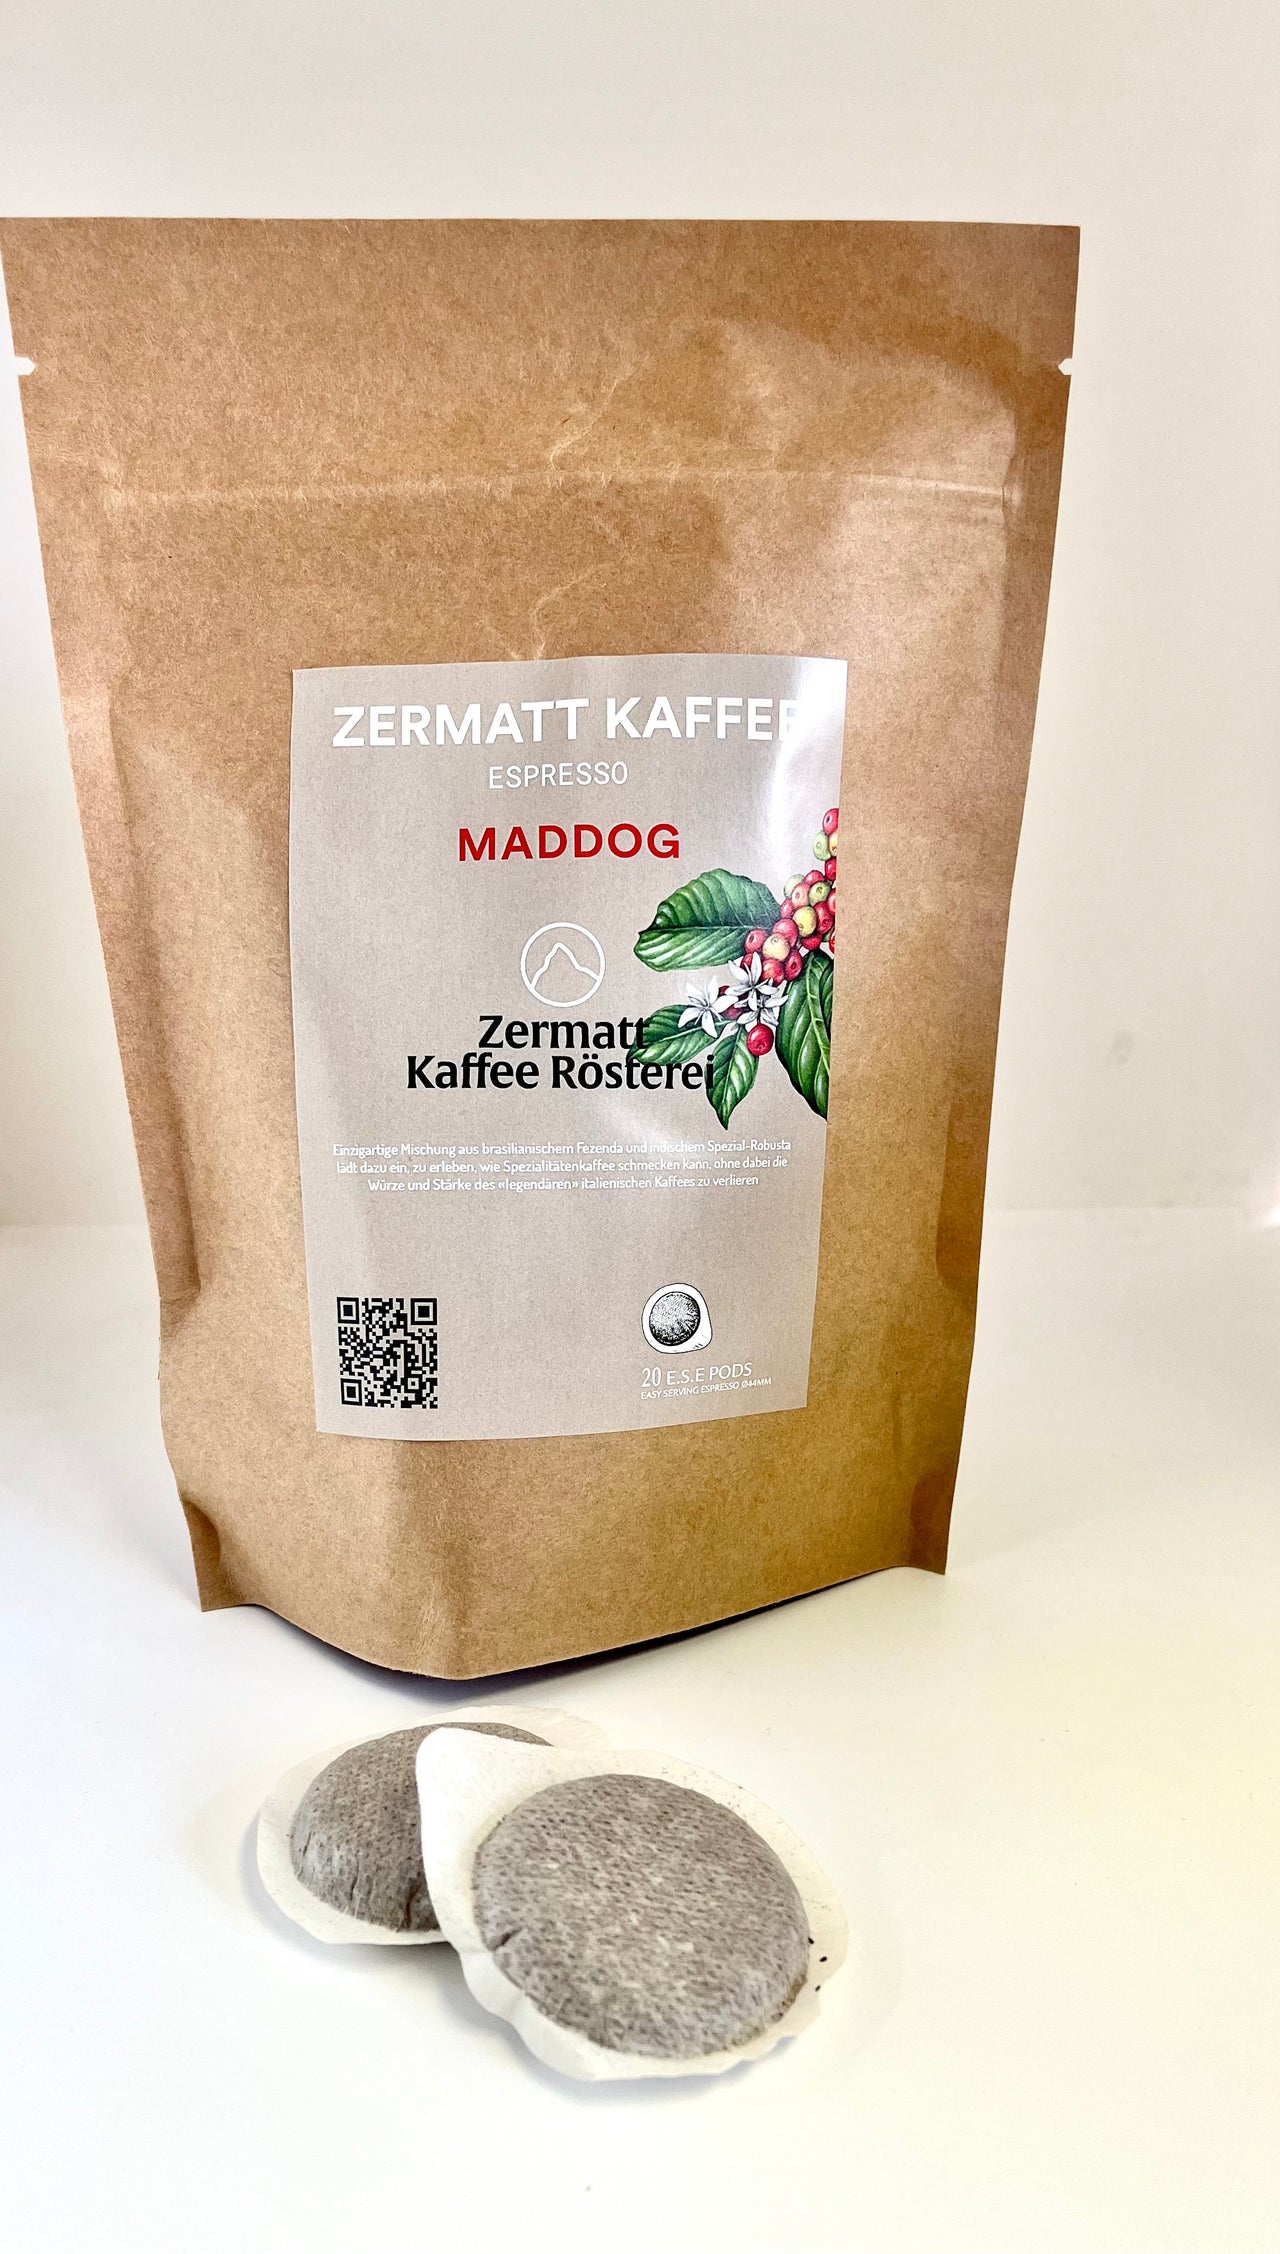 Zermatt Kaffee - Maddog - E.S.E Kaffeepads